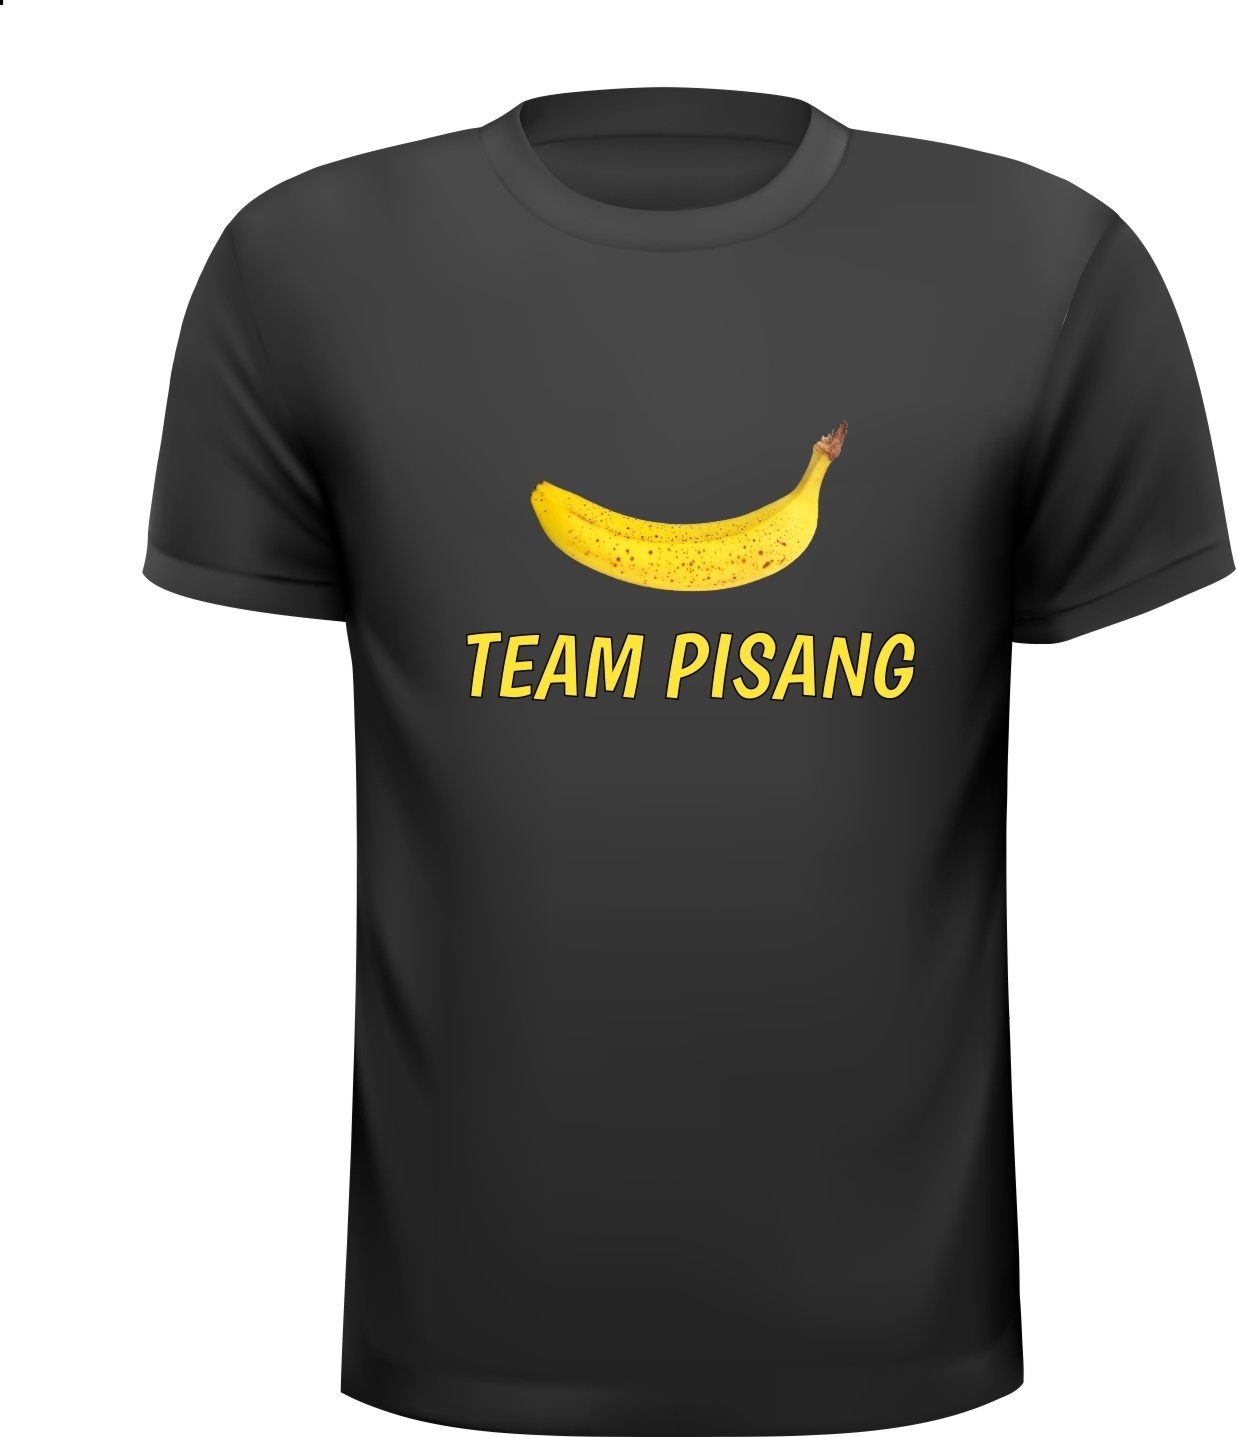 Team pisang de sjaak de lul T-shirt